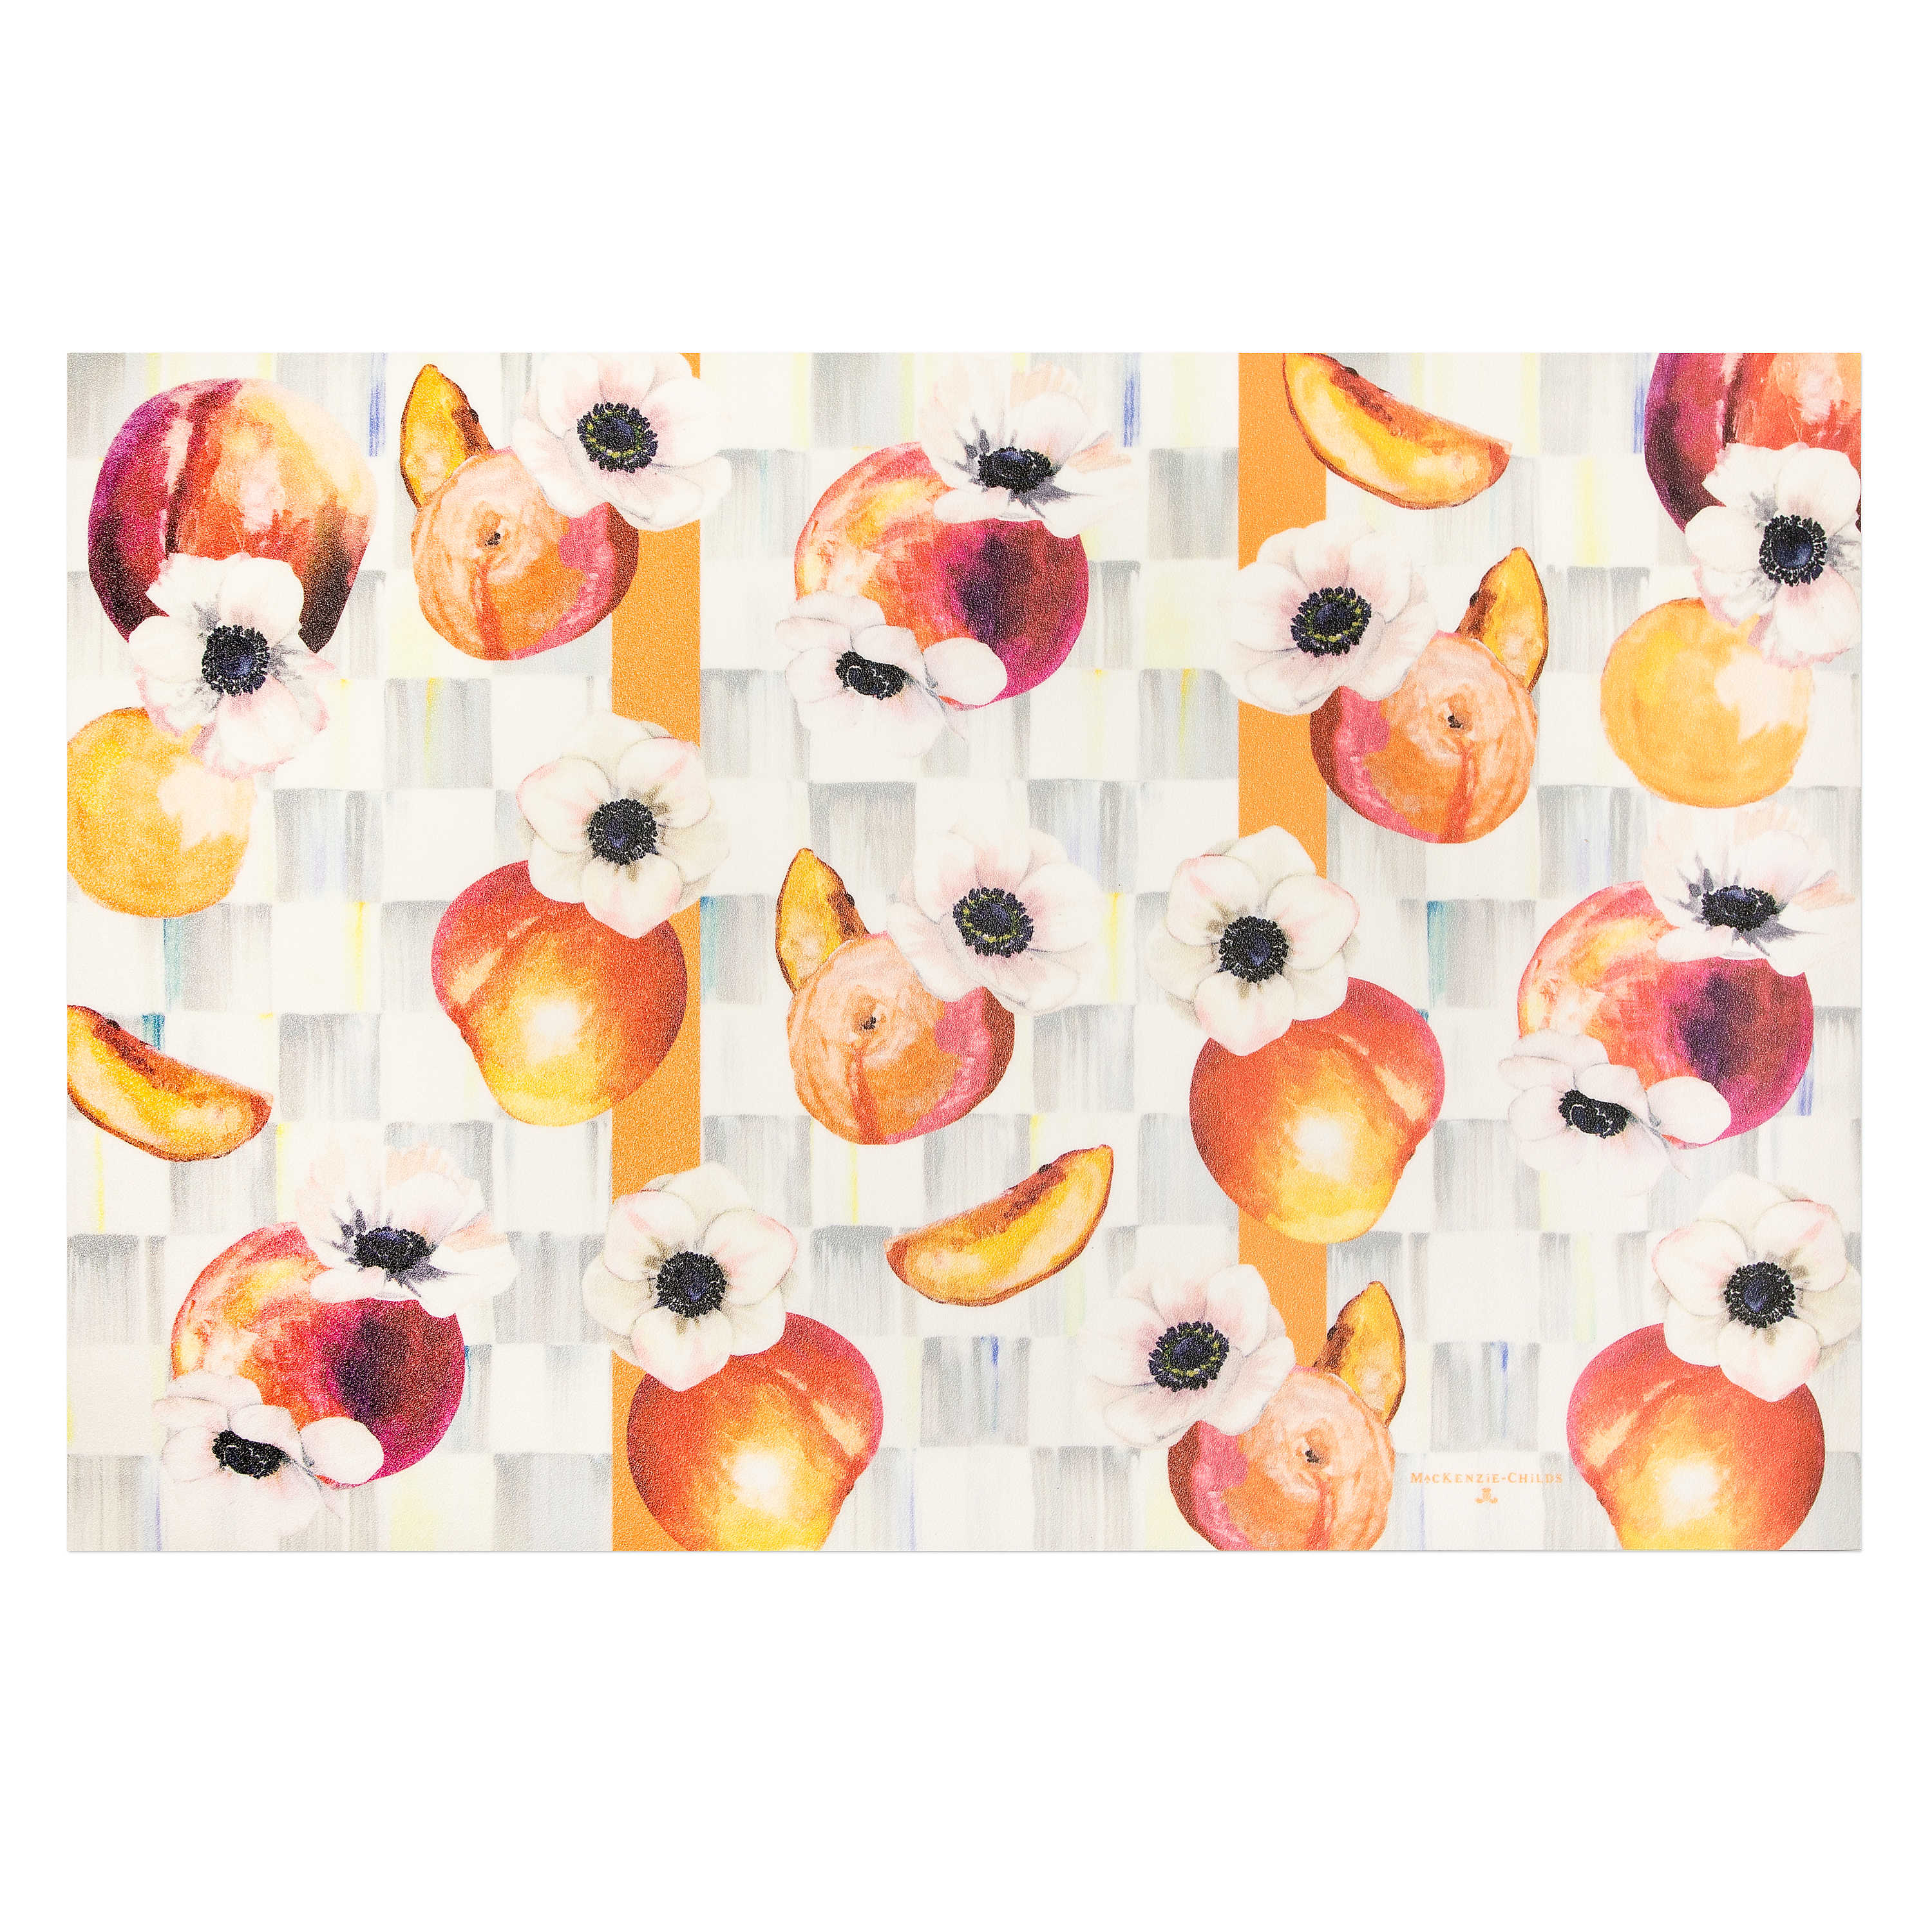 Peaches & Anemones Floor Mat - 2' x 3' mackenzie-childs Panama 0